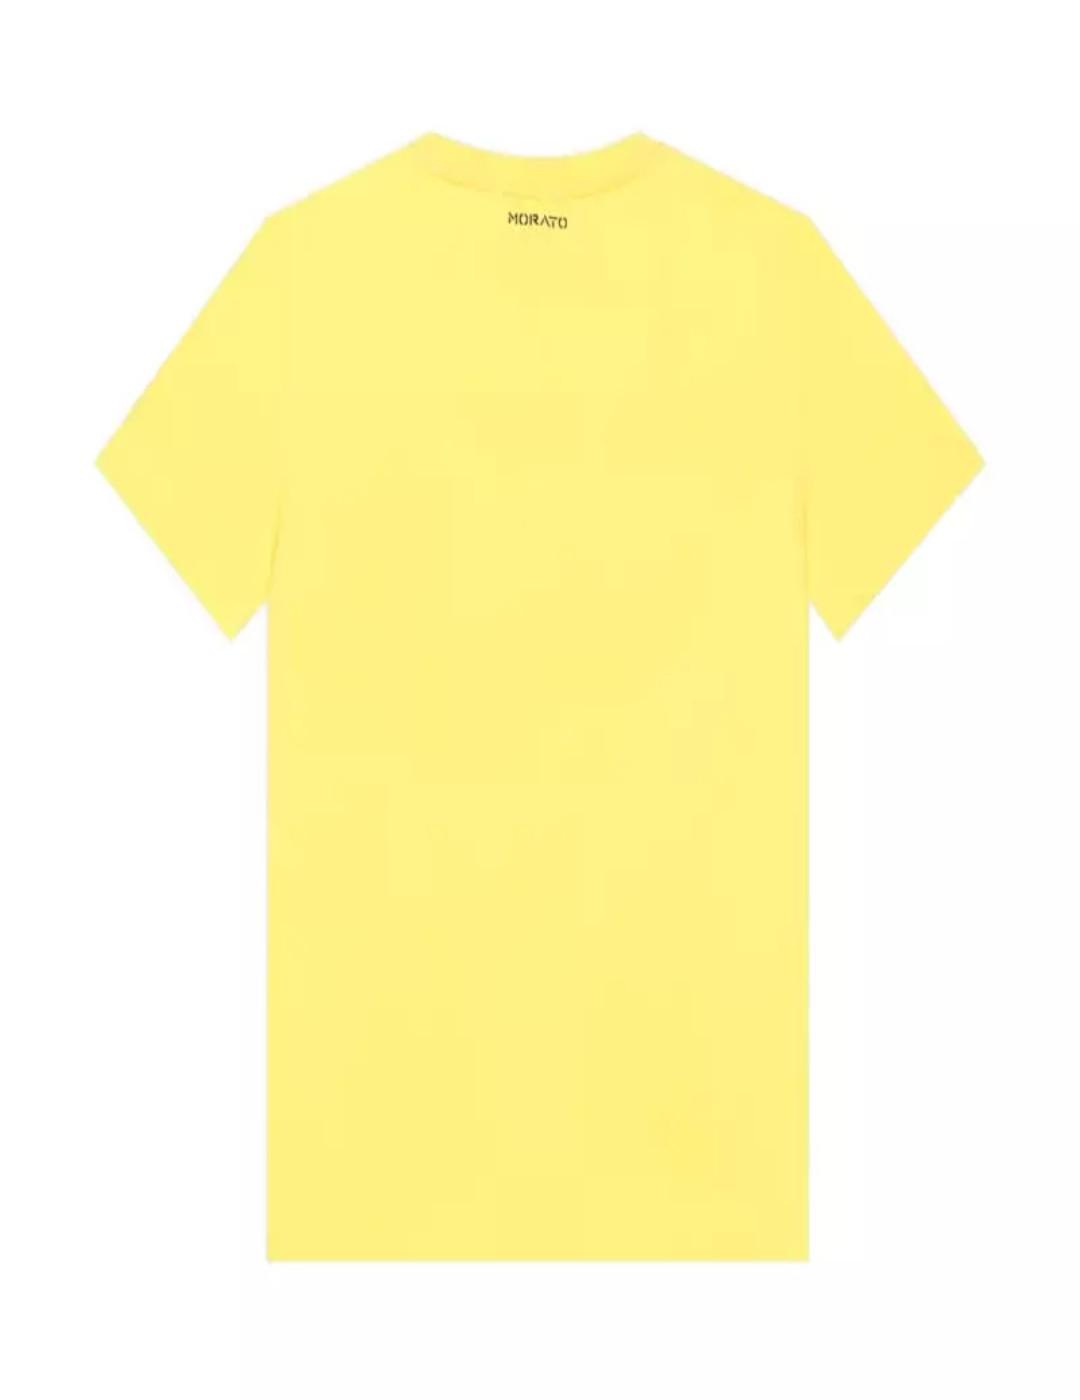 Camiseta Antonio Morato calavera color limón